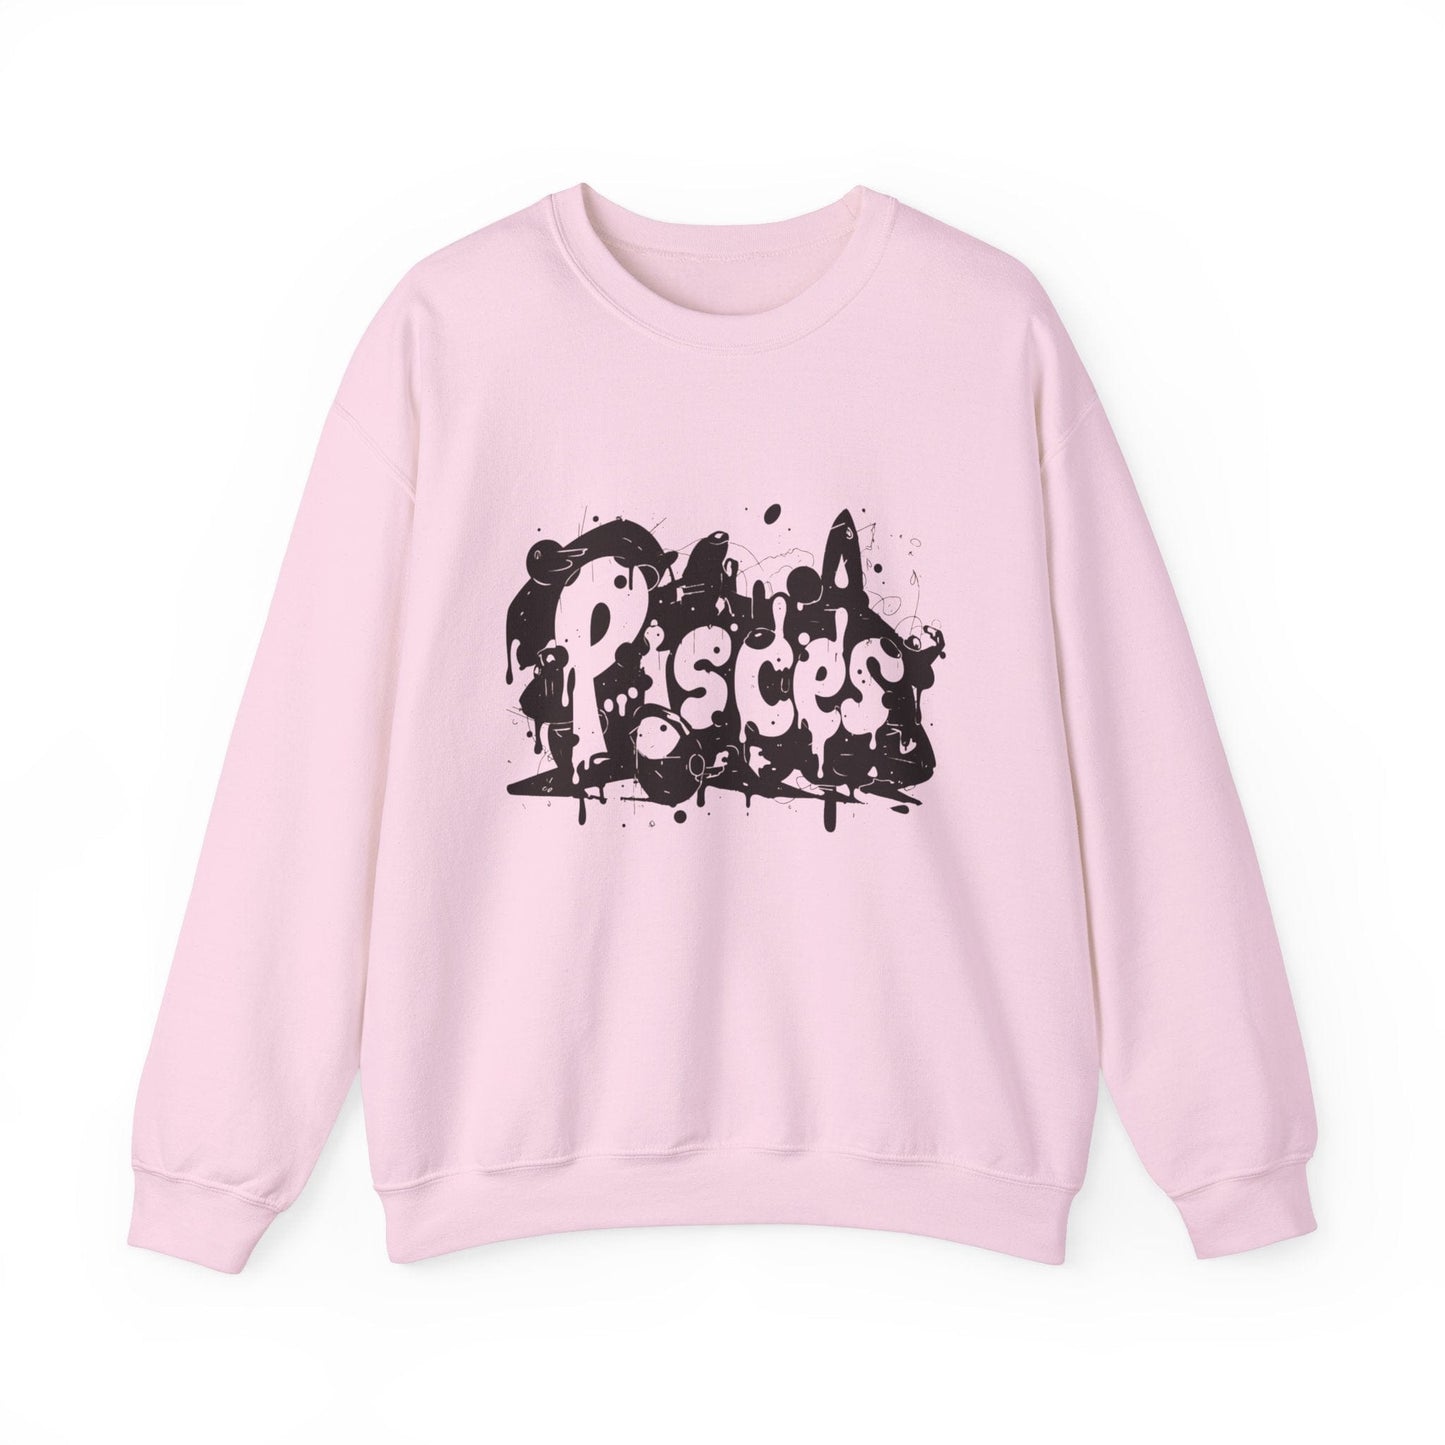 Sweatshirt S / Light Pink Piscean Inkflow Pisces Sweater: Serene Depths